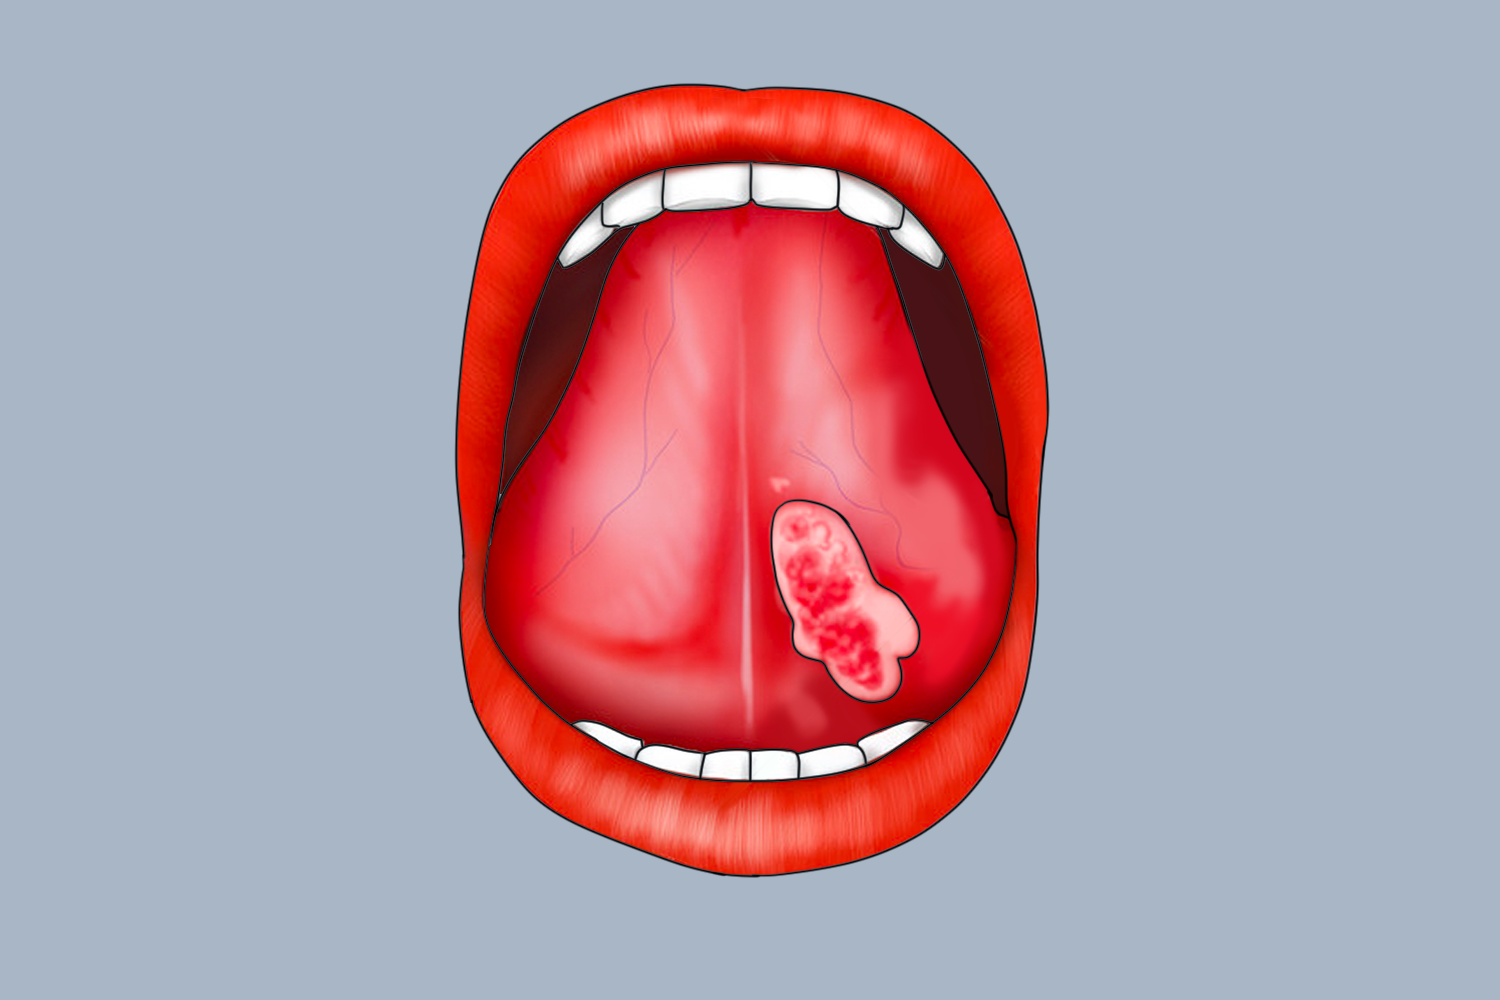 舌下腺癌图片